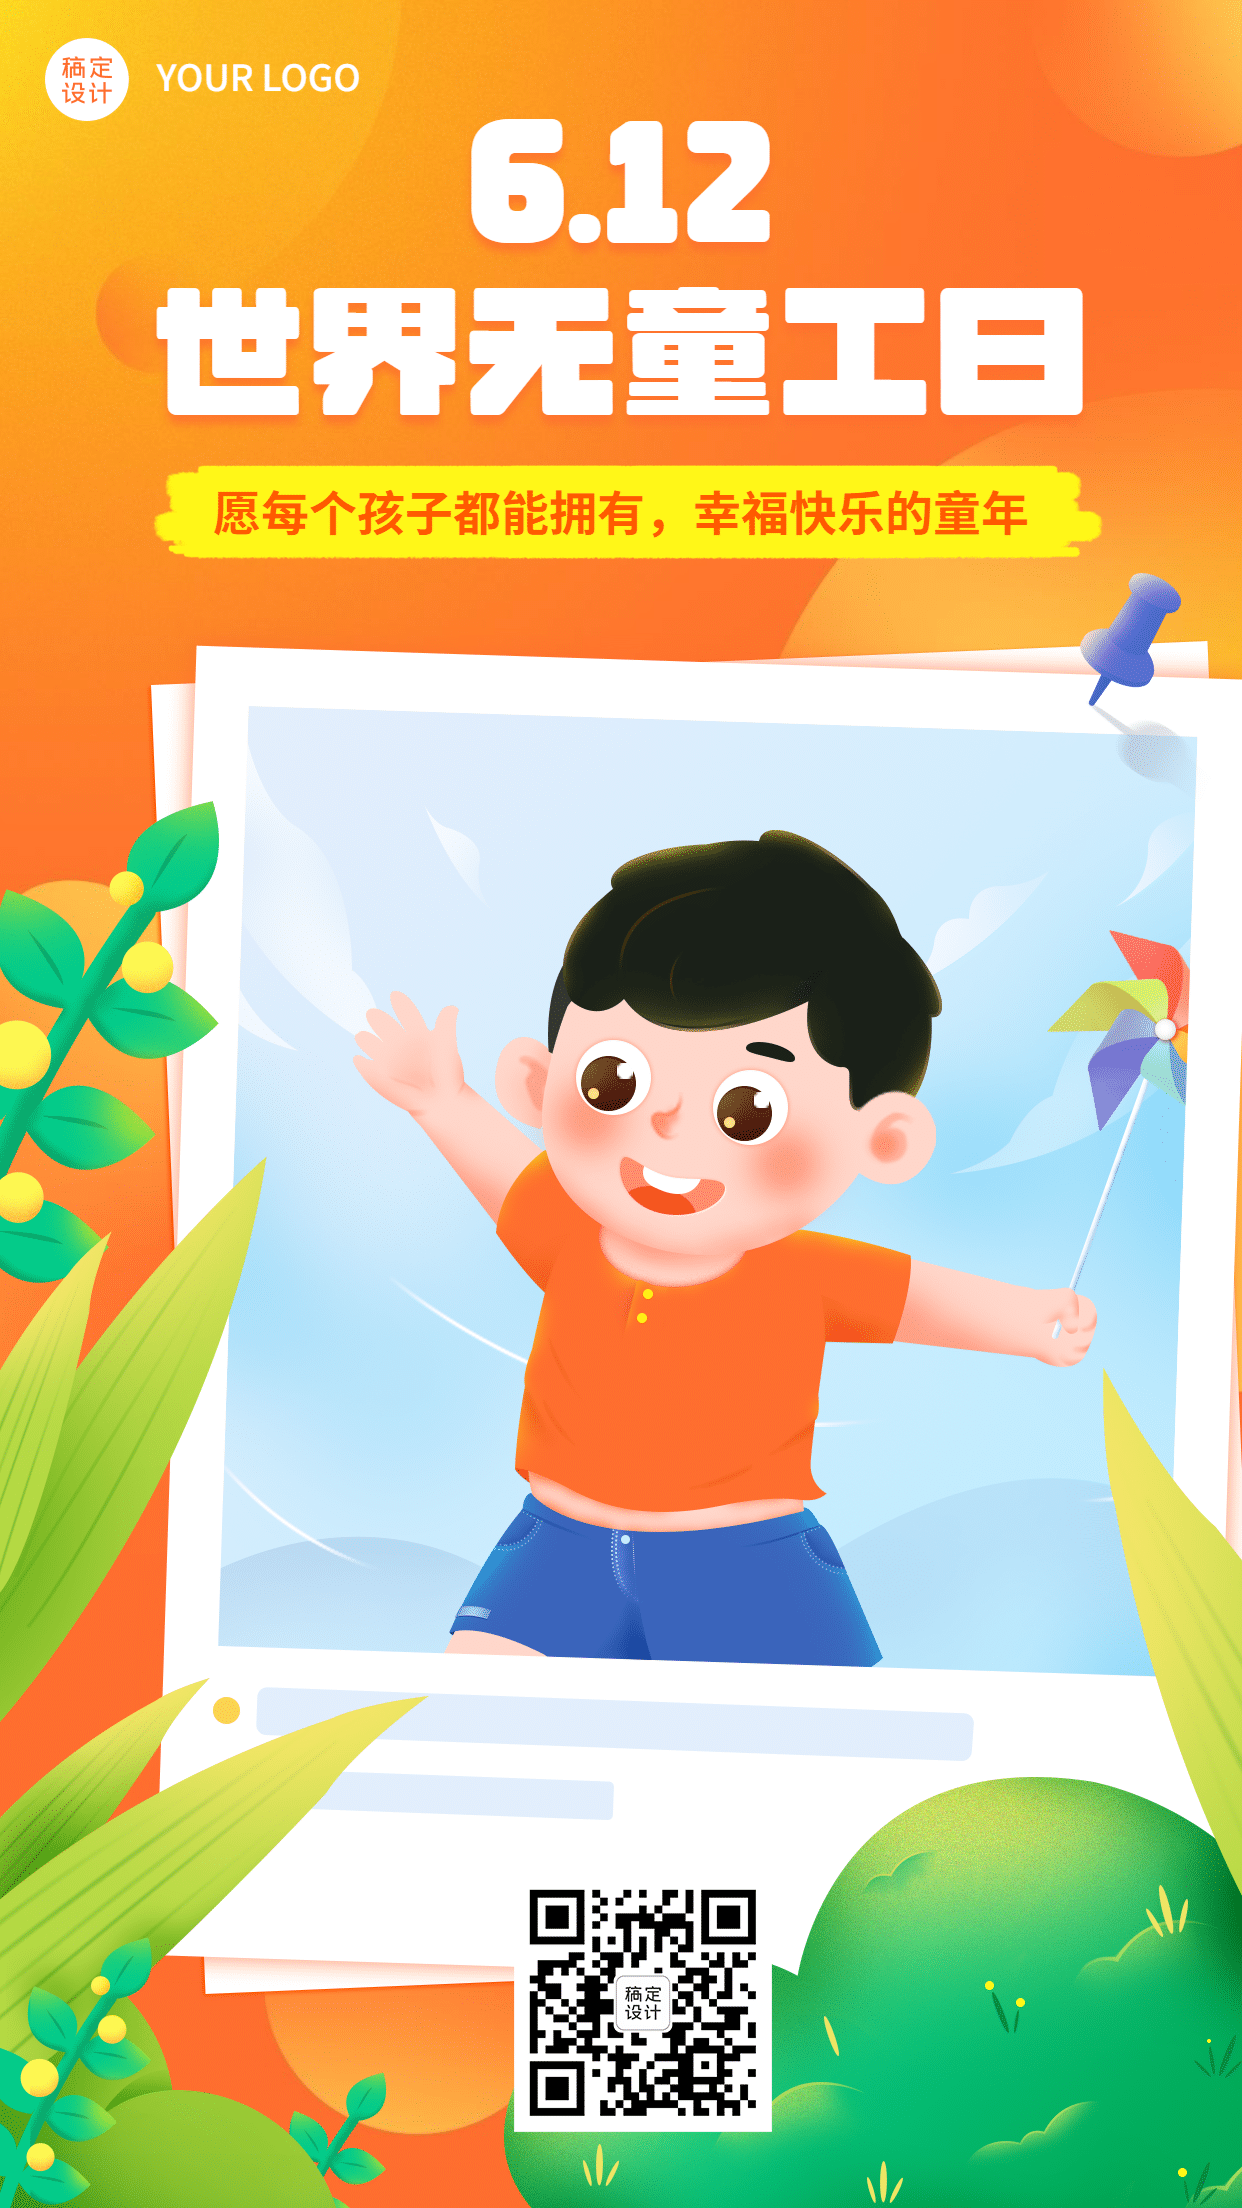 世界无童工日节日祝福可爱手绘插画手机海报预览效果